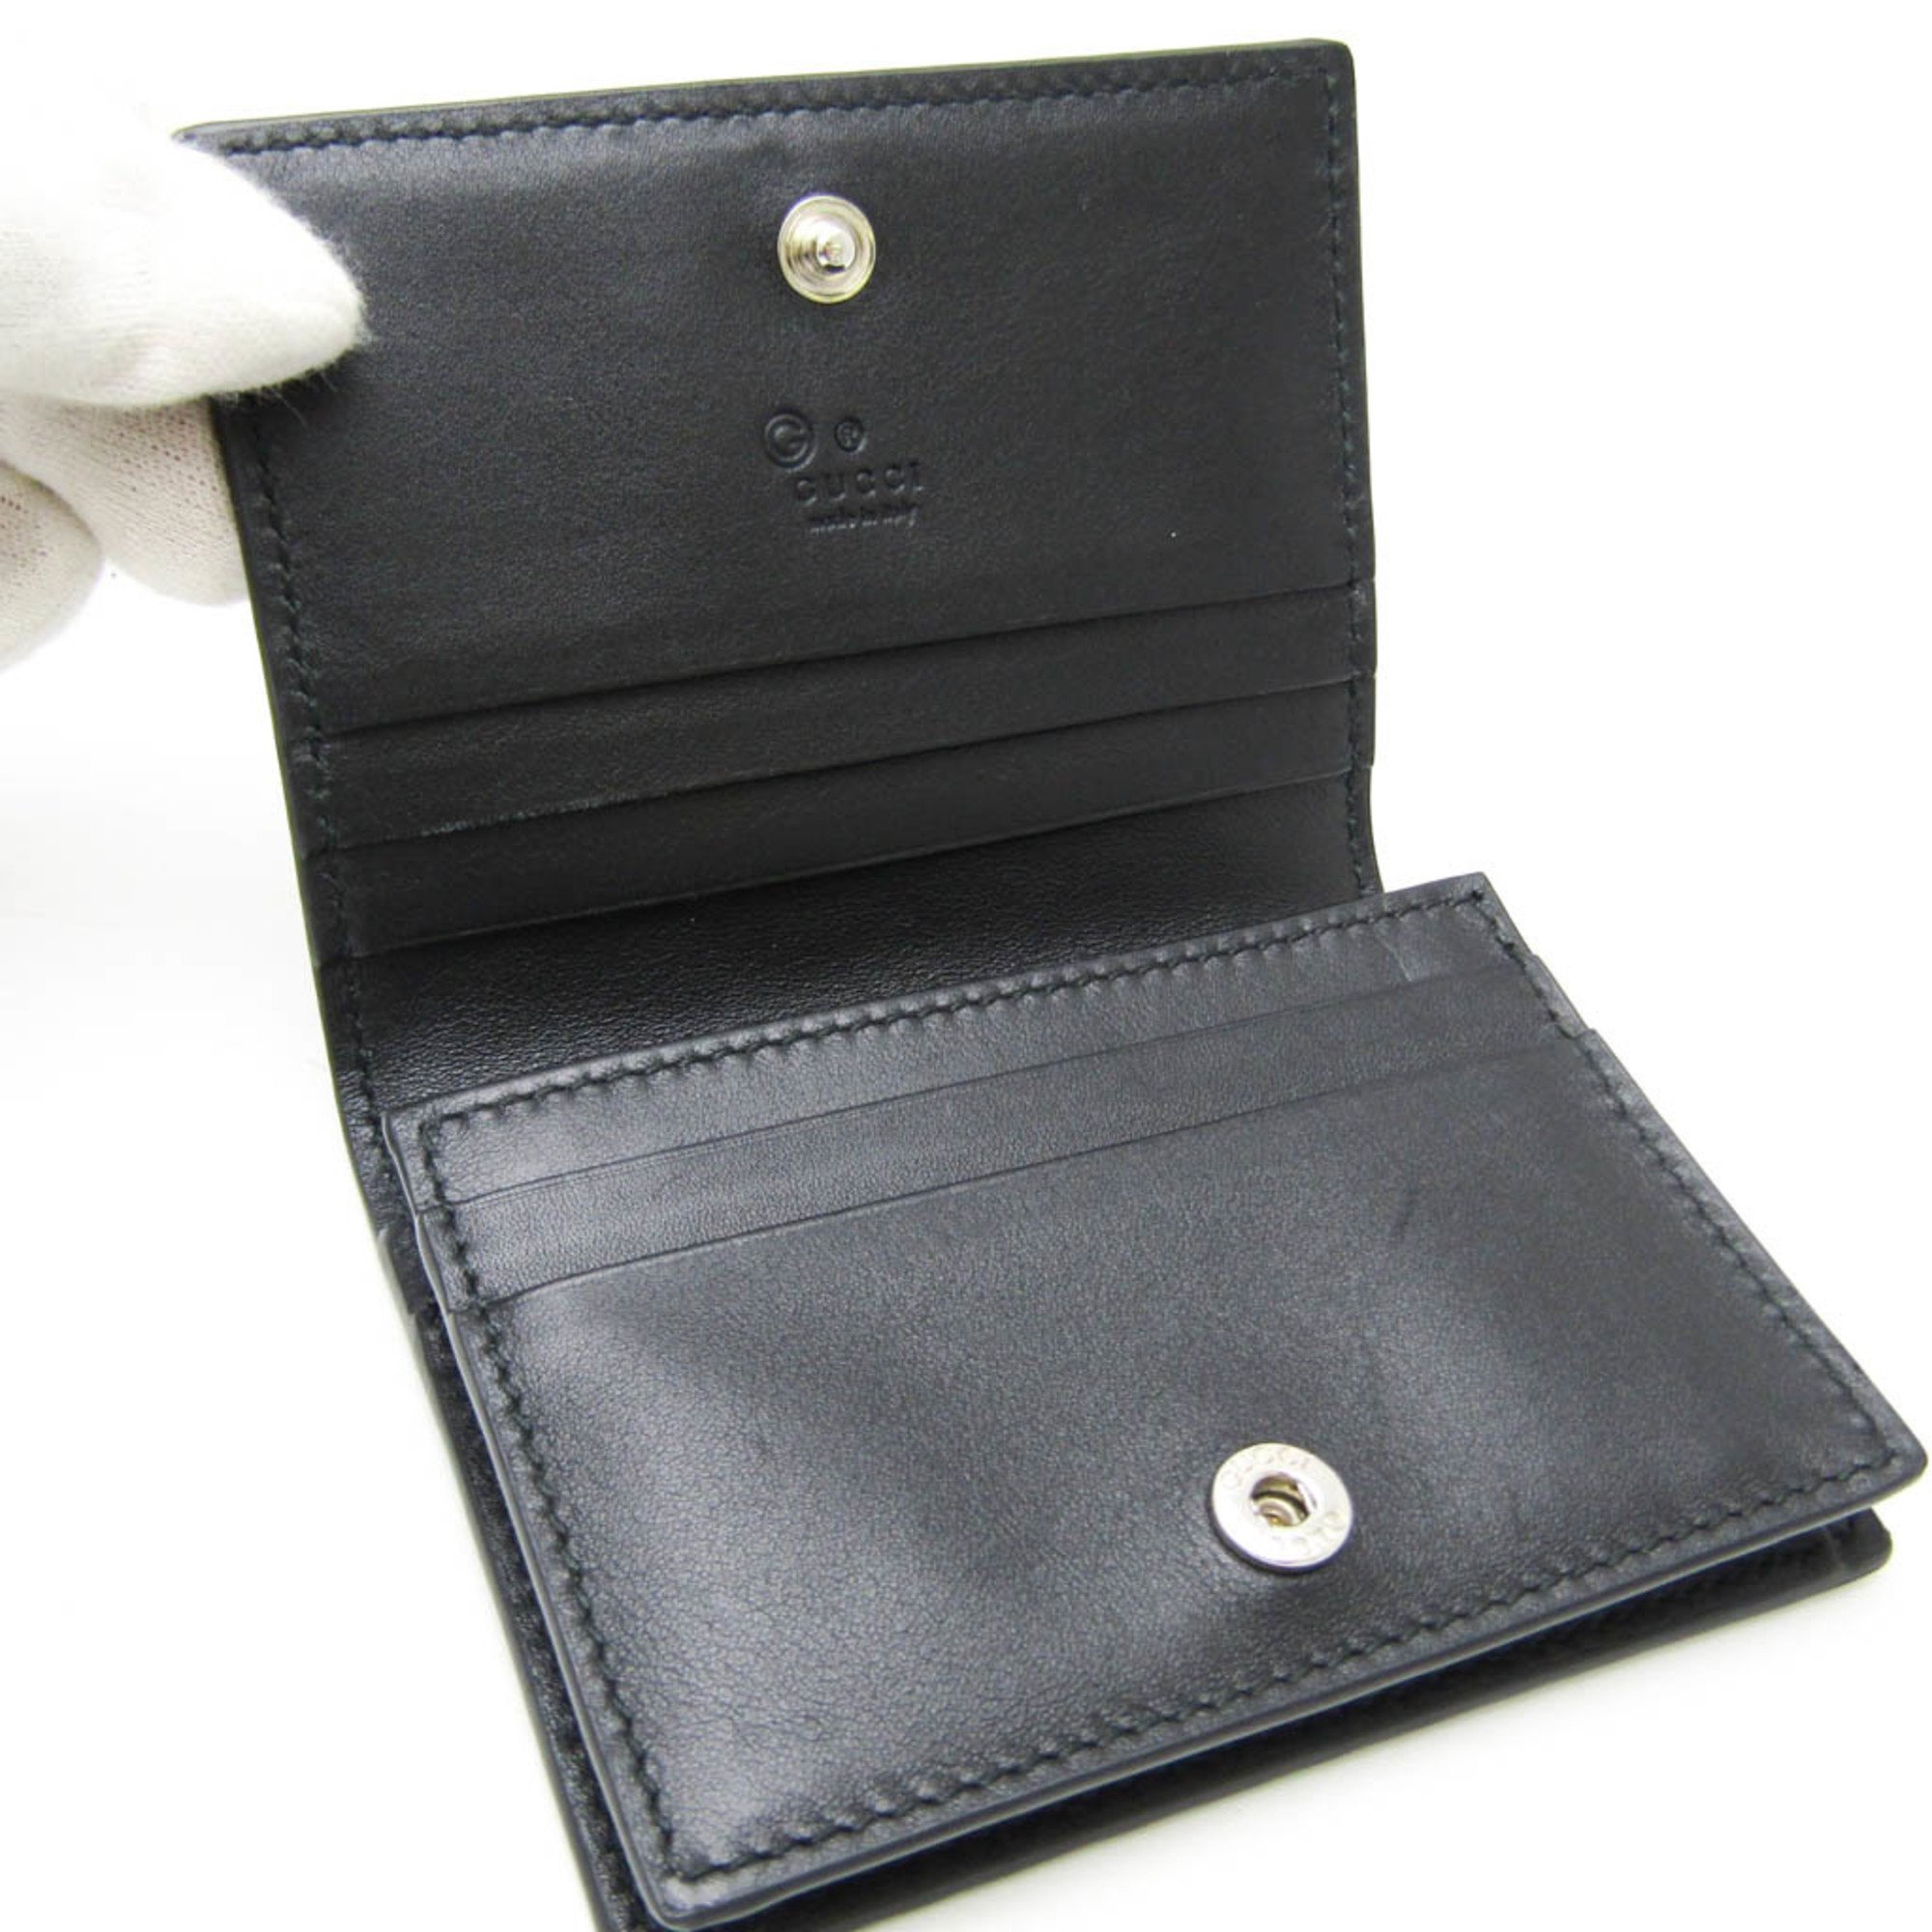 Gucci MicroGuccissima 544474 Leather Card Case Black